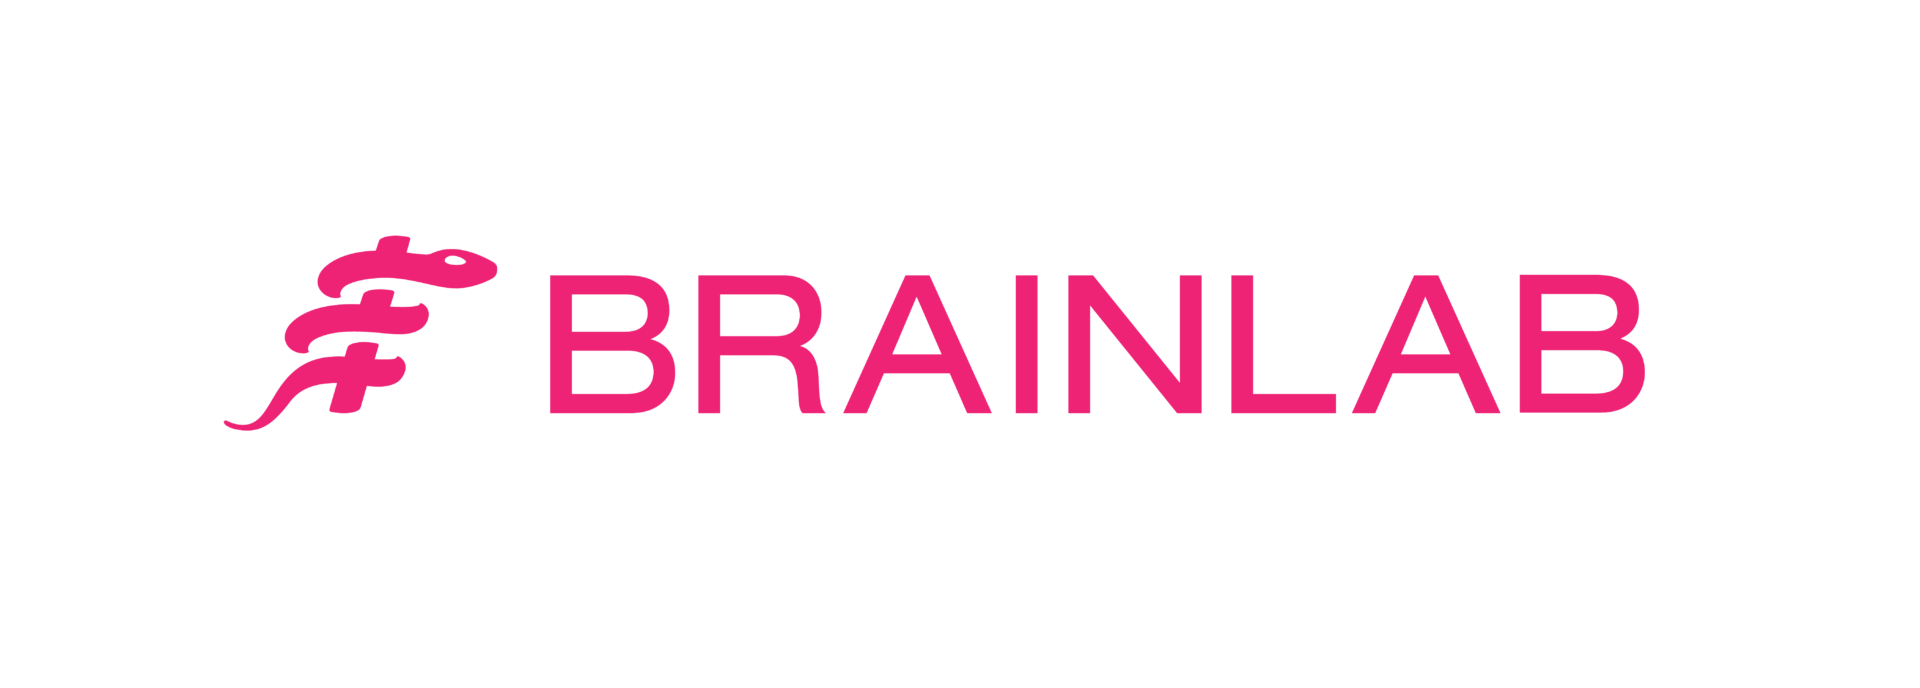 Brainlab_Logo_PINK_sRGB